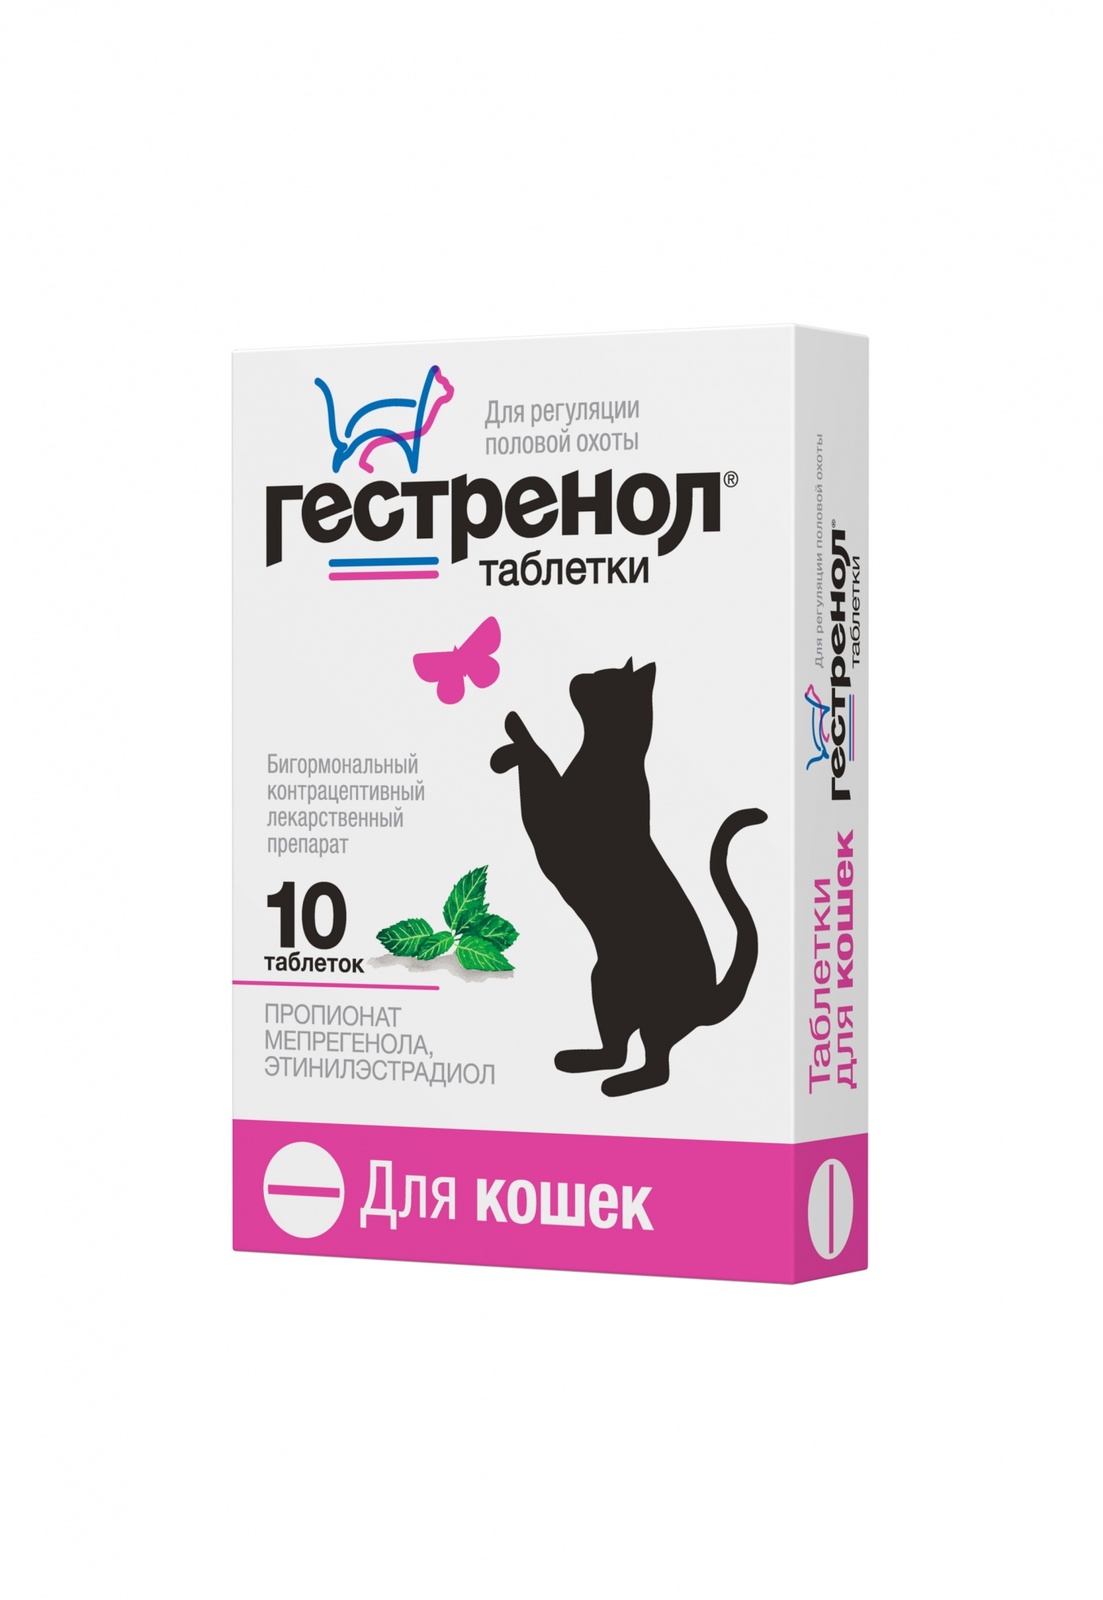 Астрафарм Астрафарм гестренол таблетки для кошек для регуляции половой охоты, 10 таб. (7 г) гестренол таблетки для котов вет 10 шт